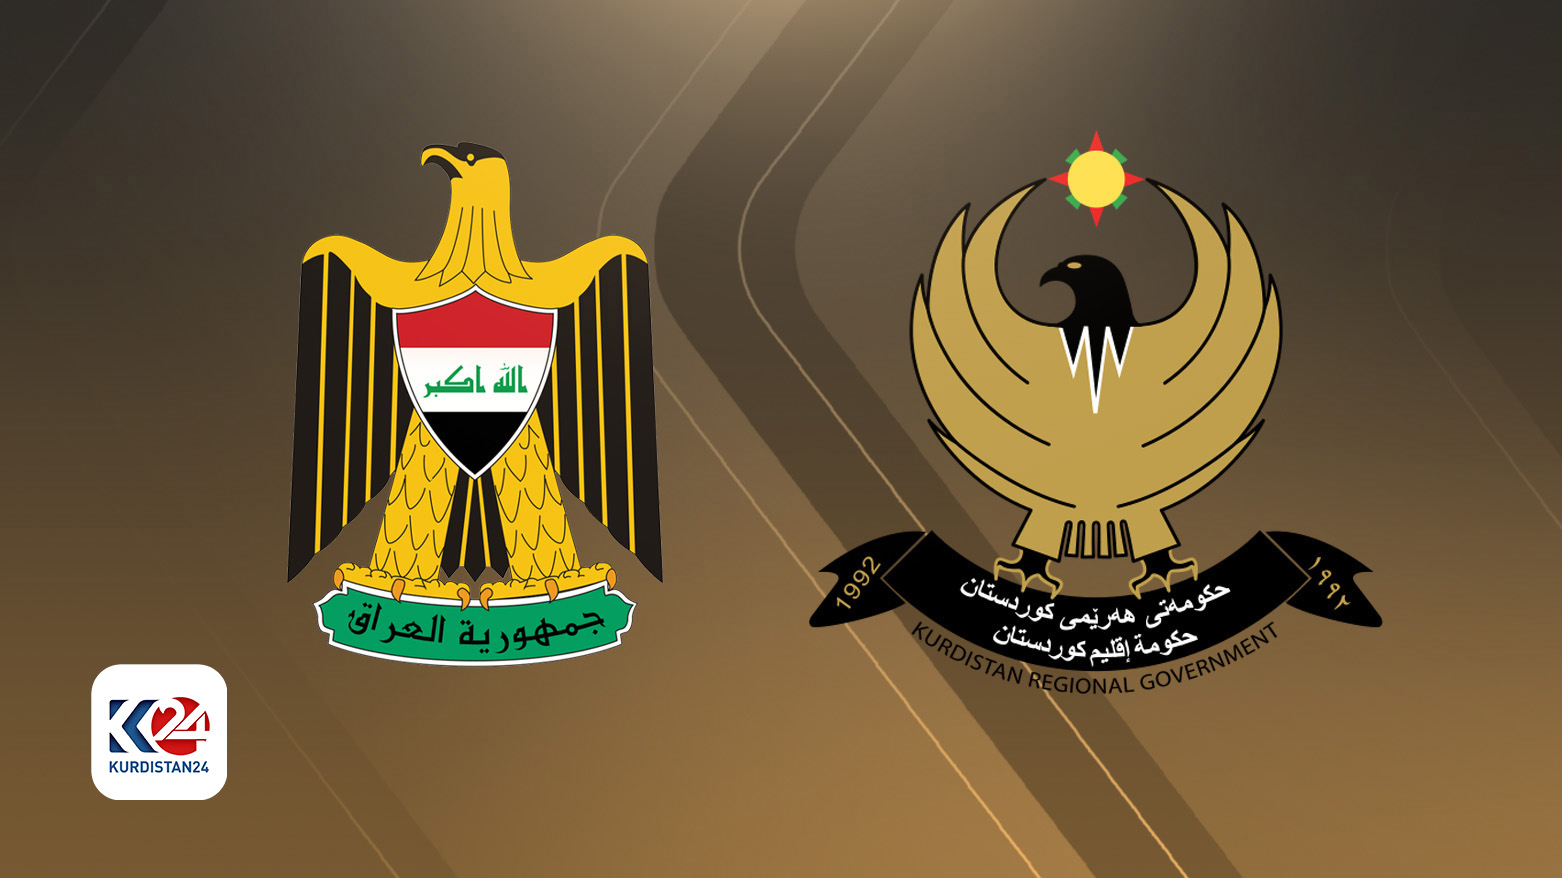 Kürdistan Bölgesi Hükümeti ile Irak Hükümetine ait logolar